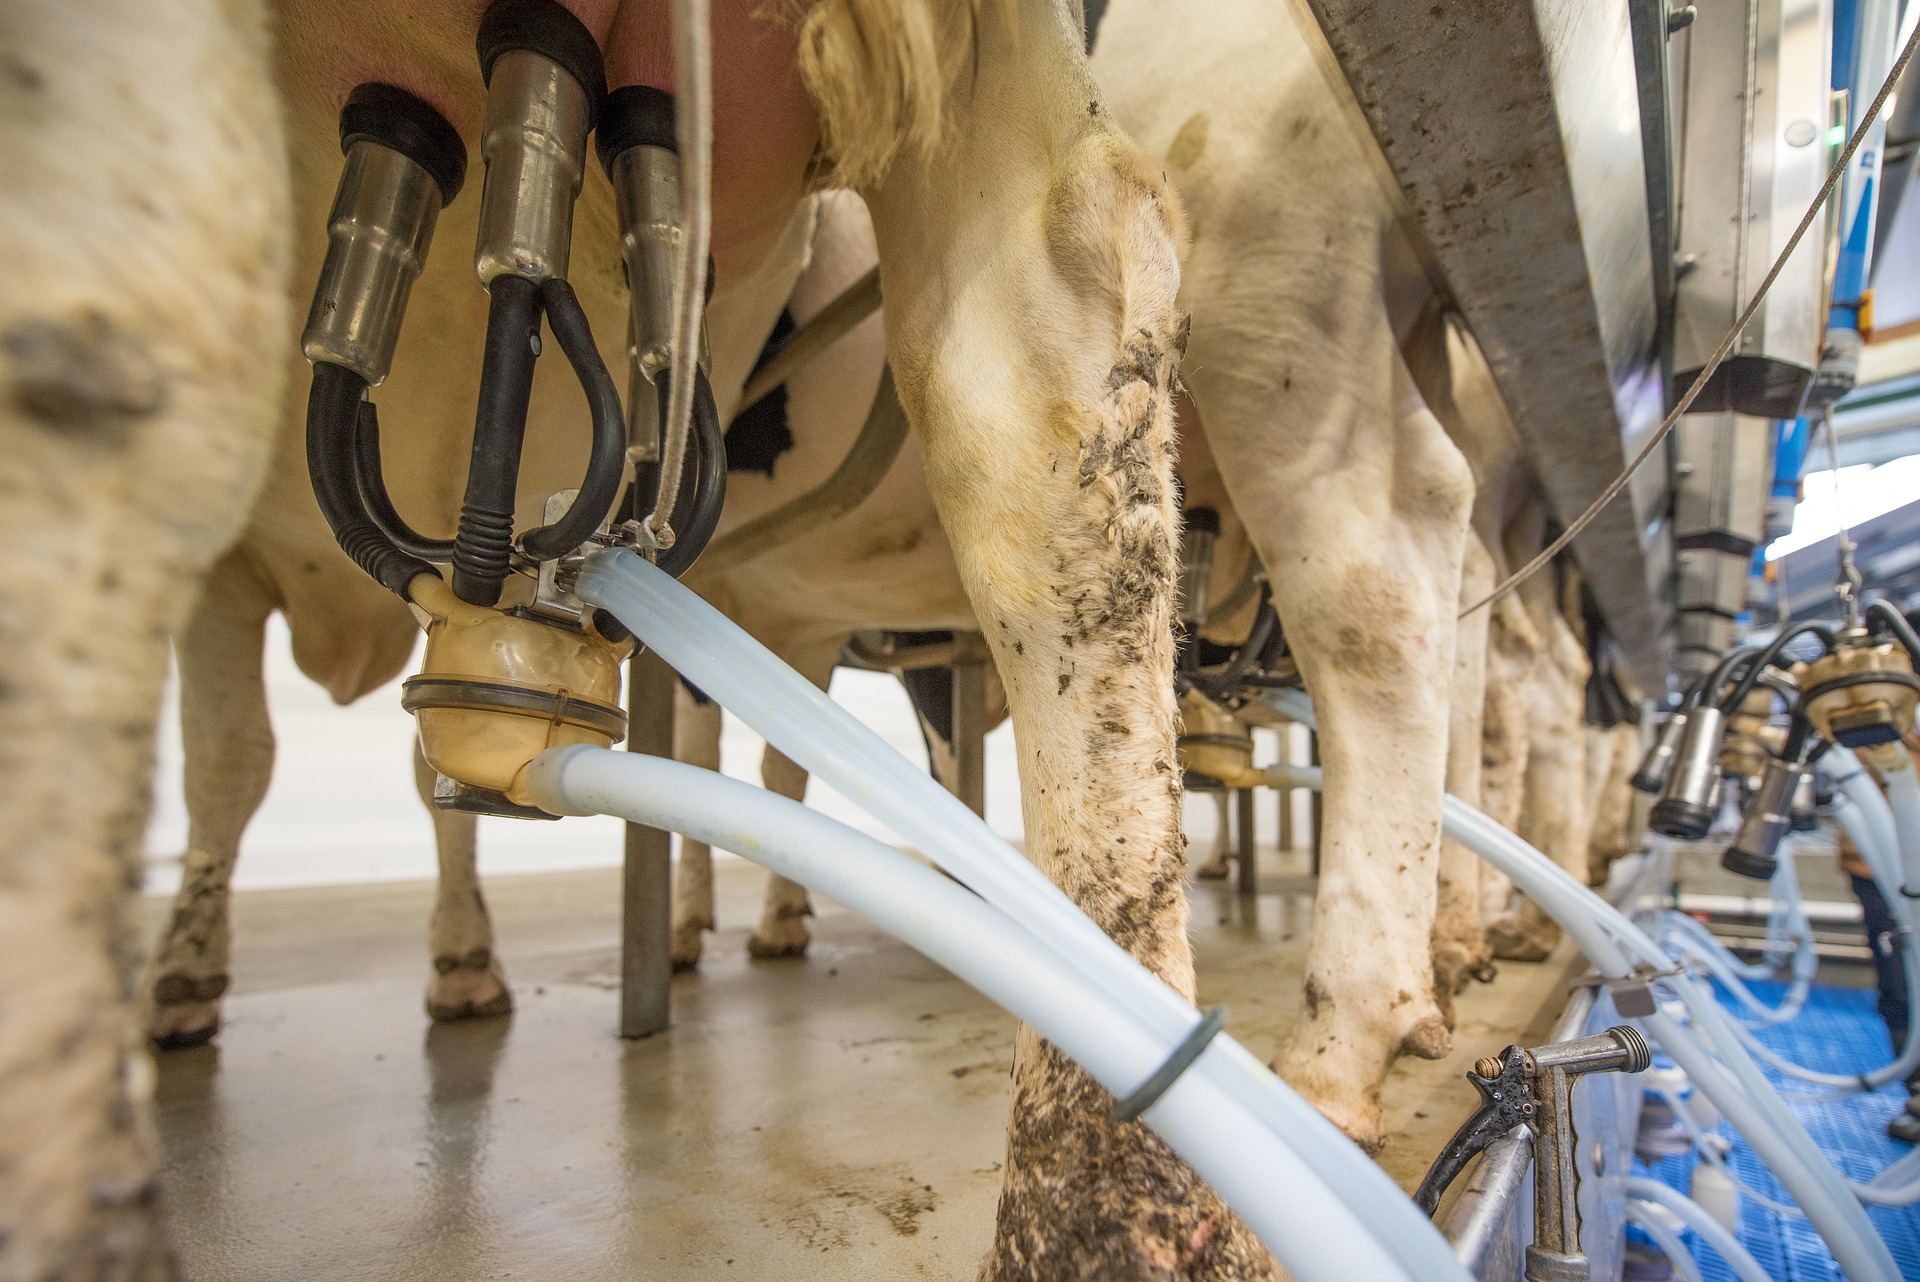 Producenci mleka zaniepokojeni spadającymi cenami skupu i rosnącymi kosztami produkcji